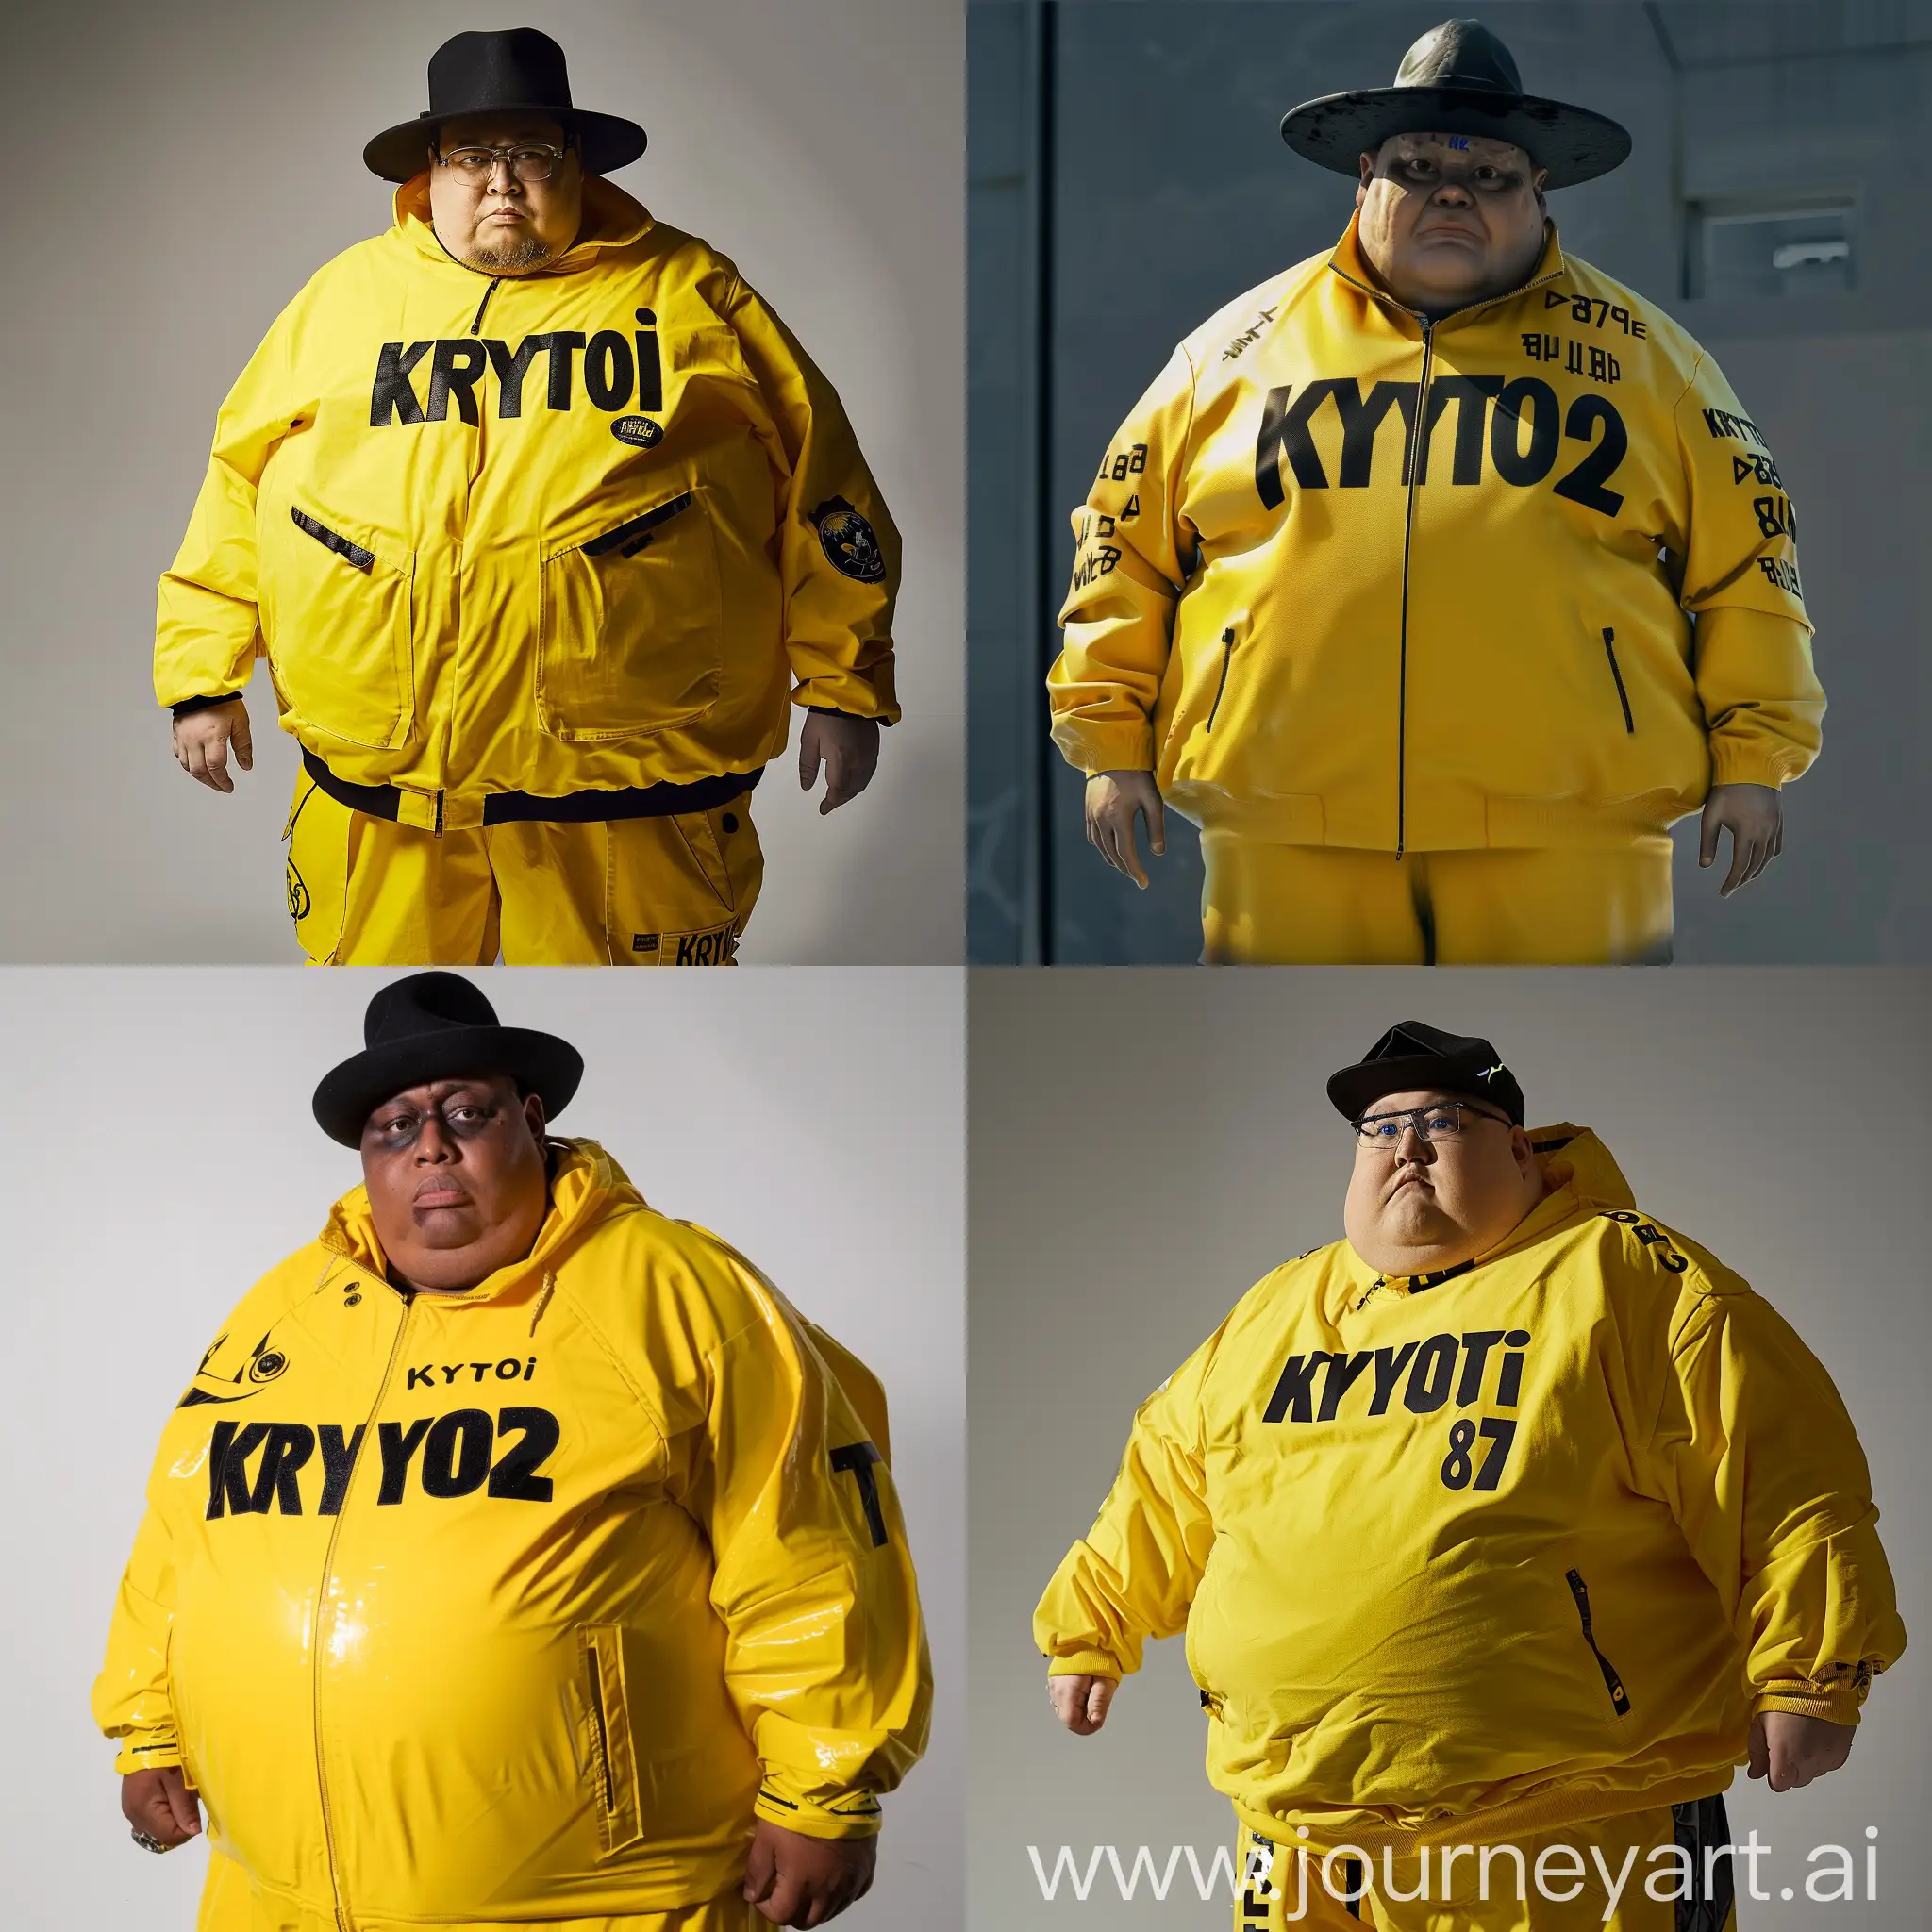 человек в желтой одежде с черной шапкой. на одежде у него написано Krytoi872 и он толстый